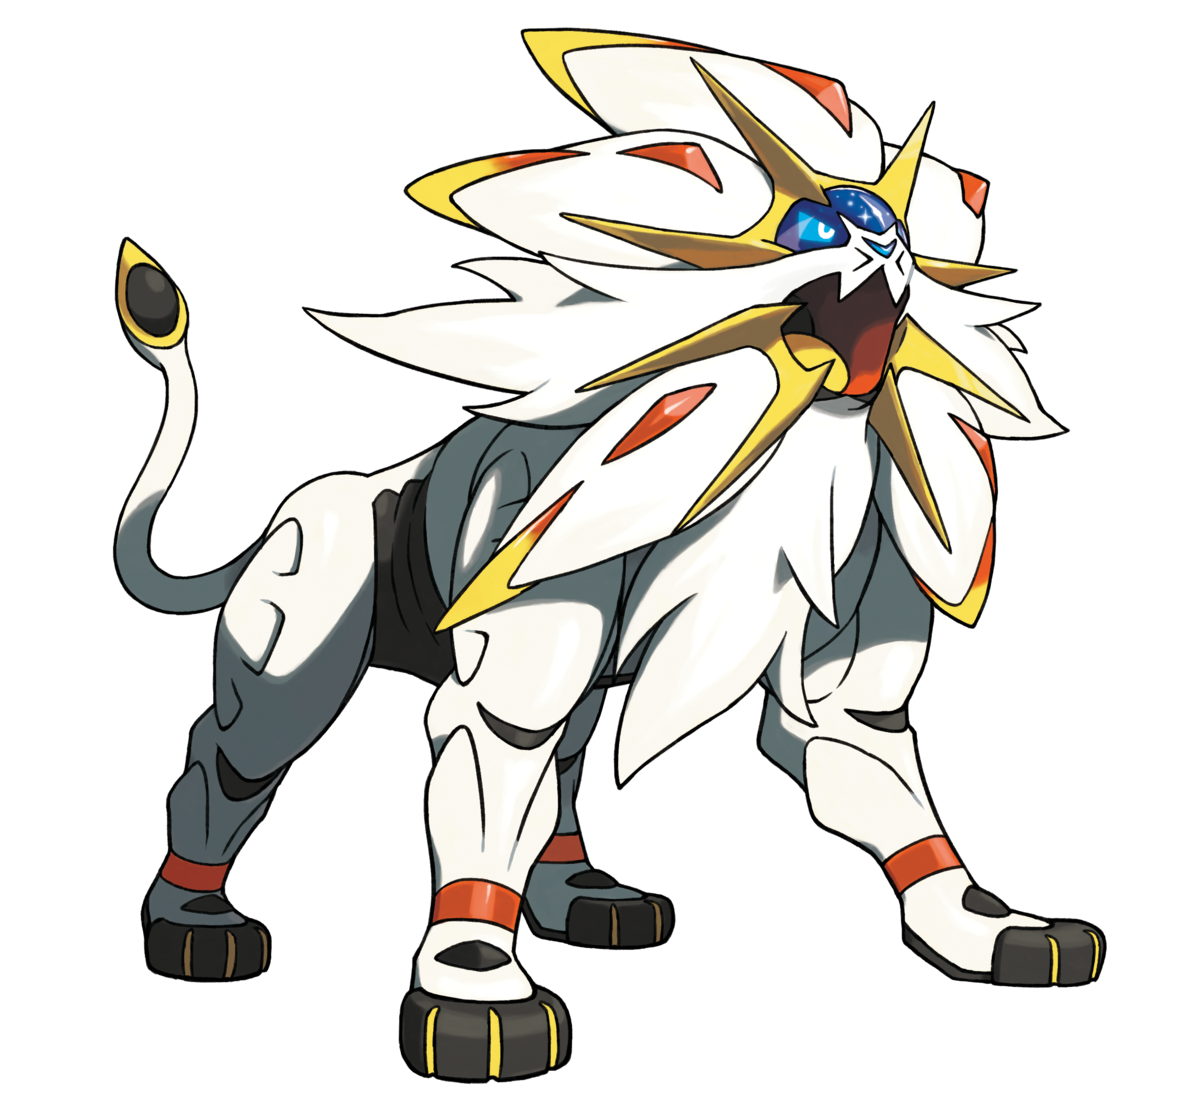 Pokémon Sol y Luna; Pokémon que debieron tener forma Alola - Pokémaster